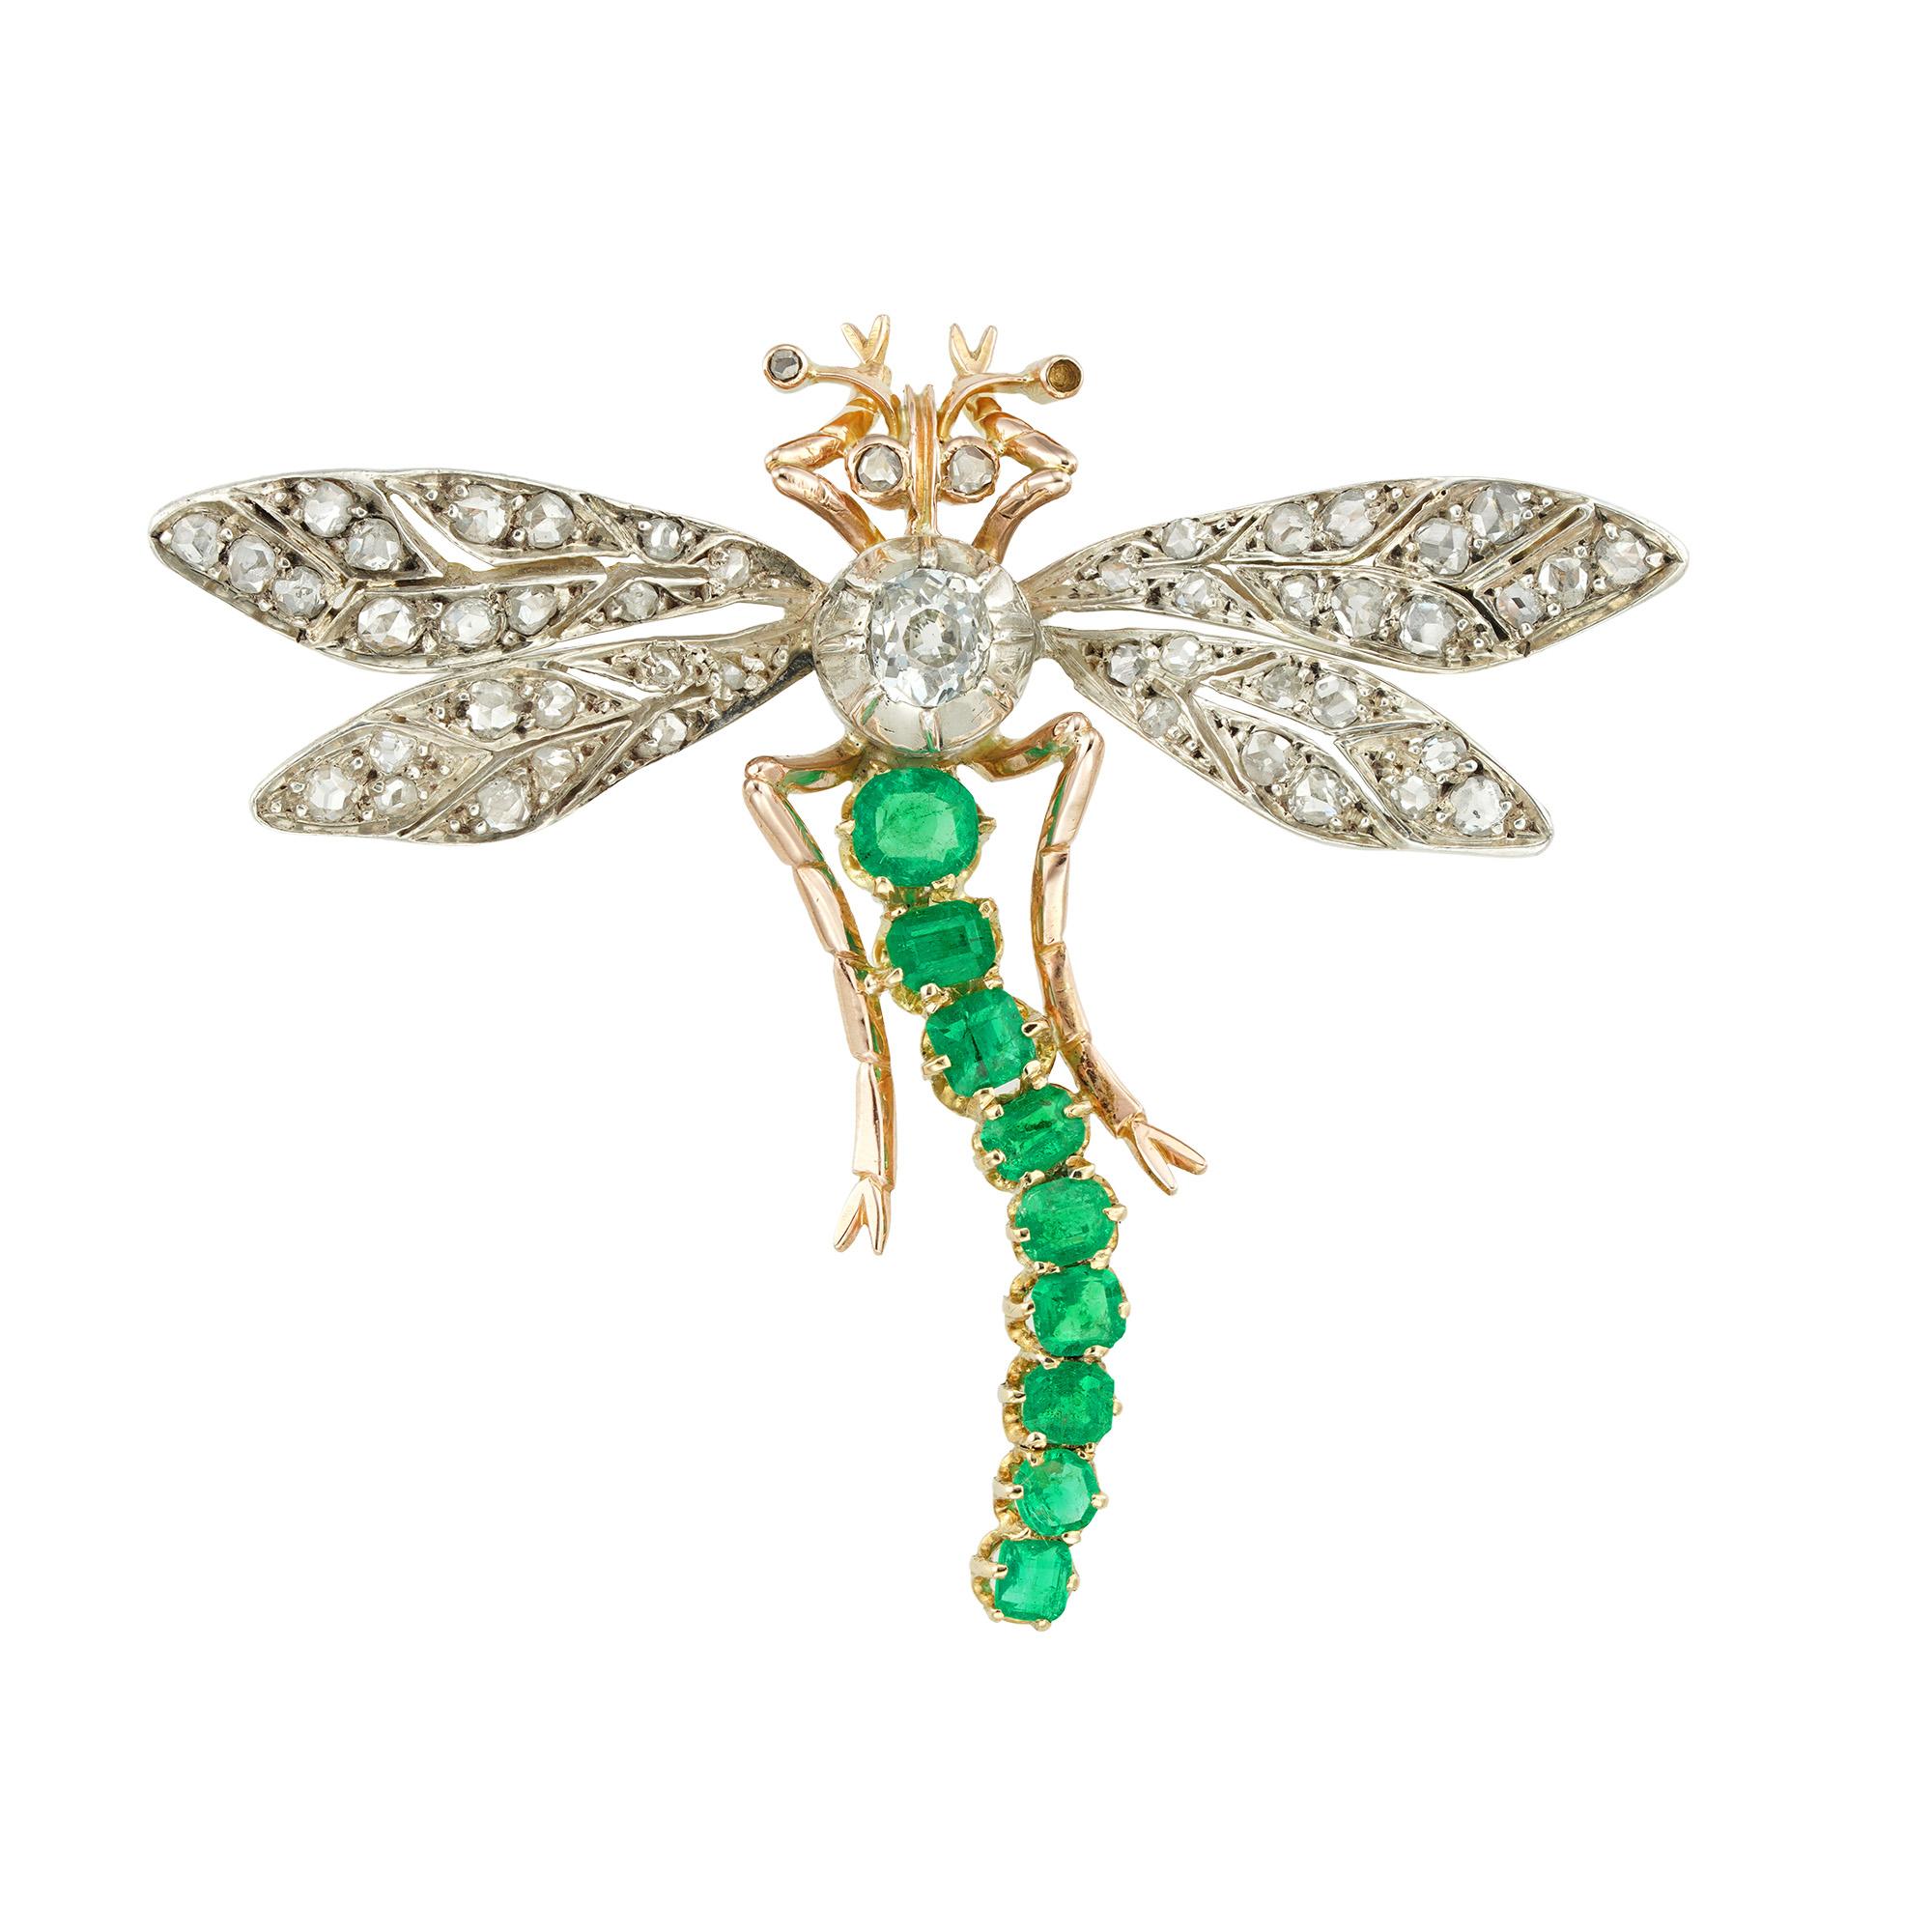 Eine Libellenbrosche mit Smaragden und Diamanten aus dem späten 19. Jahrhundert, der Körper besetzt mit einem Diamanten im alten europäischen Schliff mit einem geschätzten Gewicht von 0,4 Karat, der Schwanz besetzt mit neun facettierten Smaragden